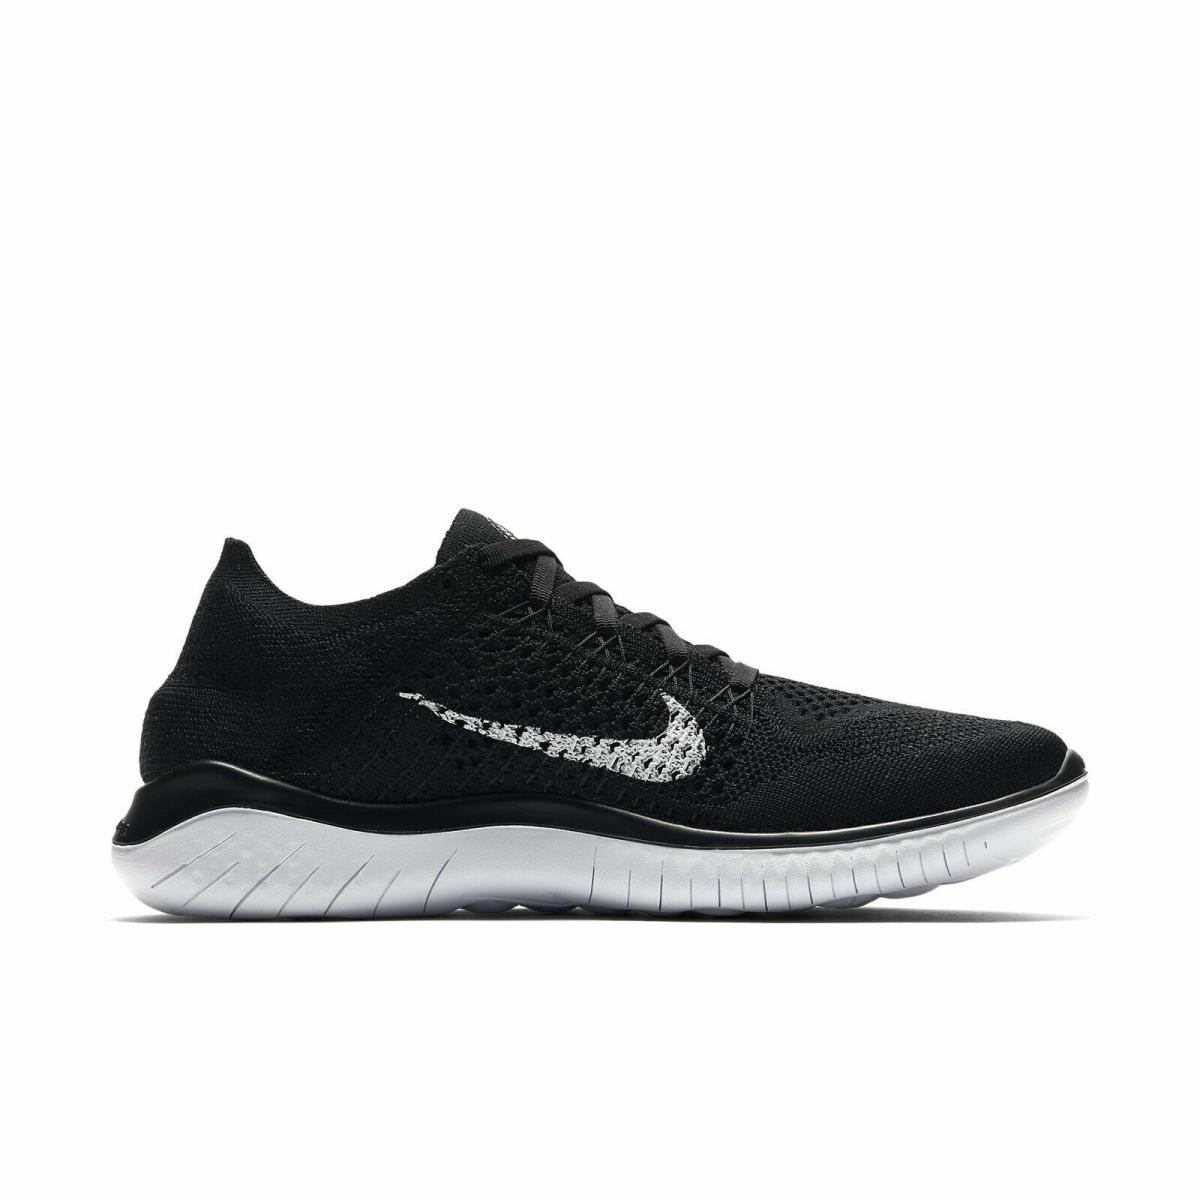 Nike shoes Free Flyknit - Black / White 0